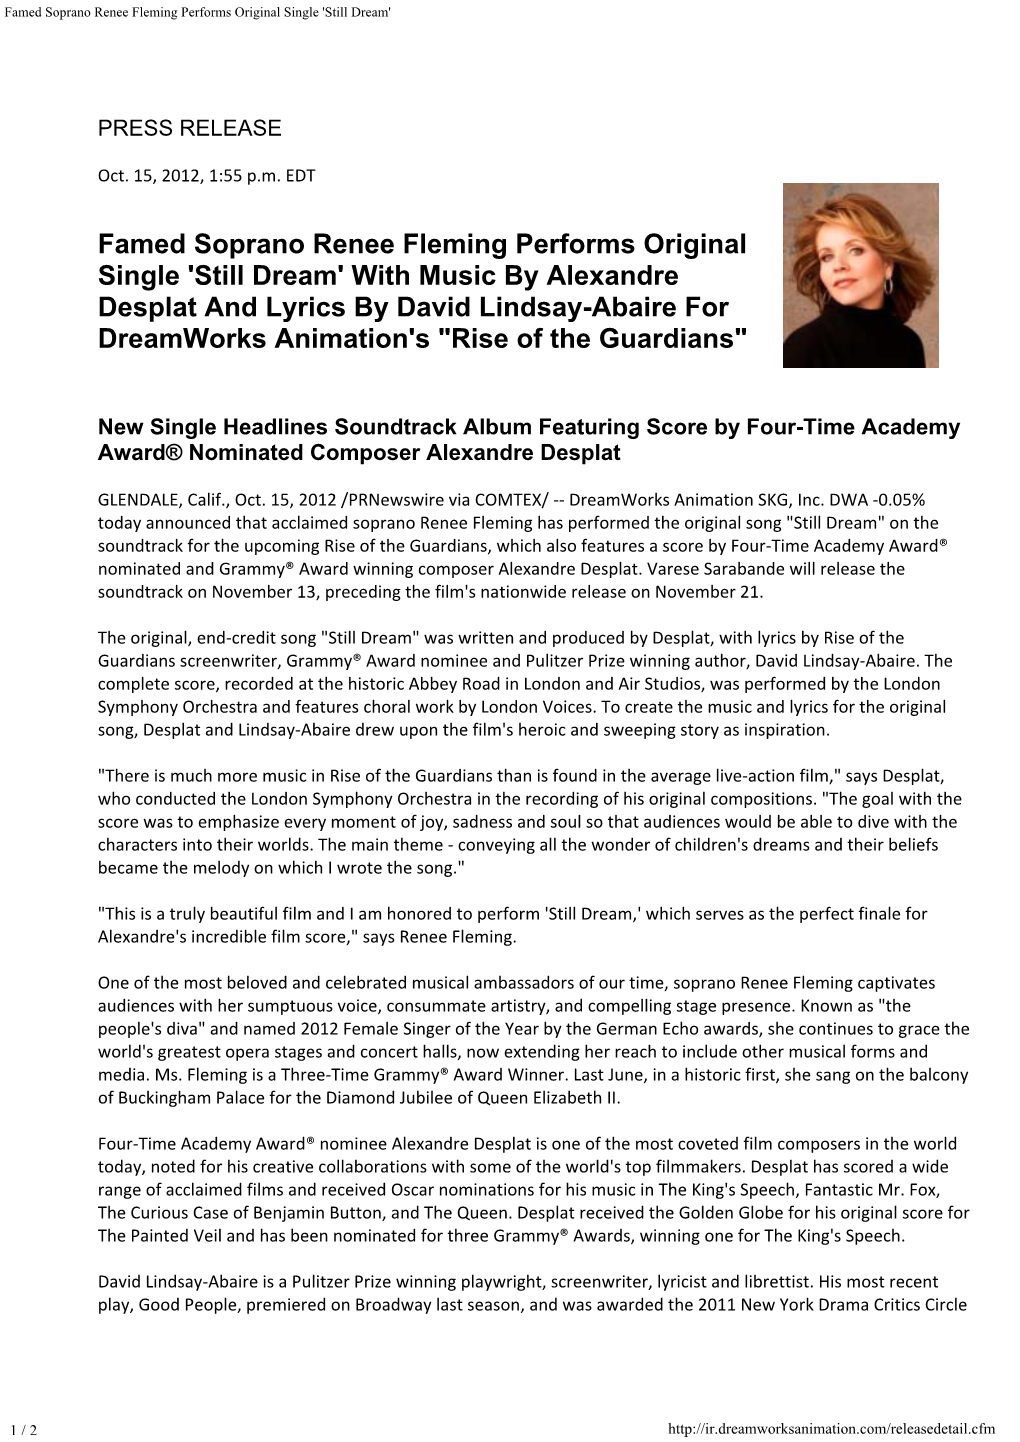 Famed Soprano Renee Fleming Performs Original Single 'Still Dream'